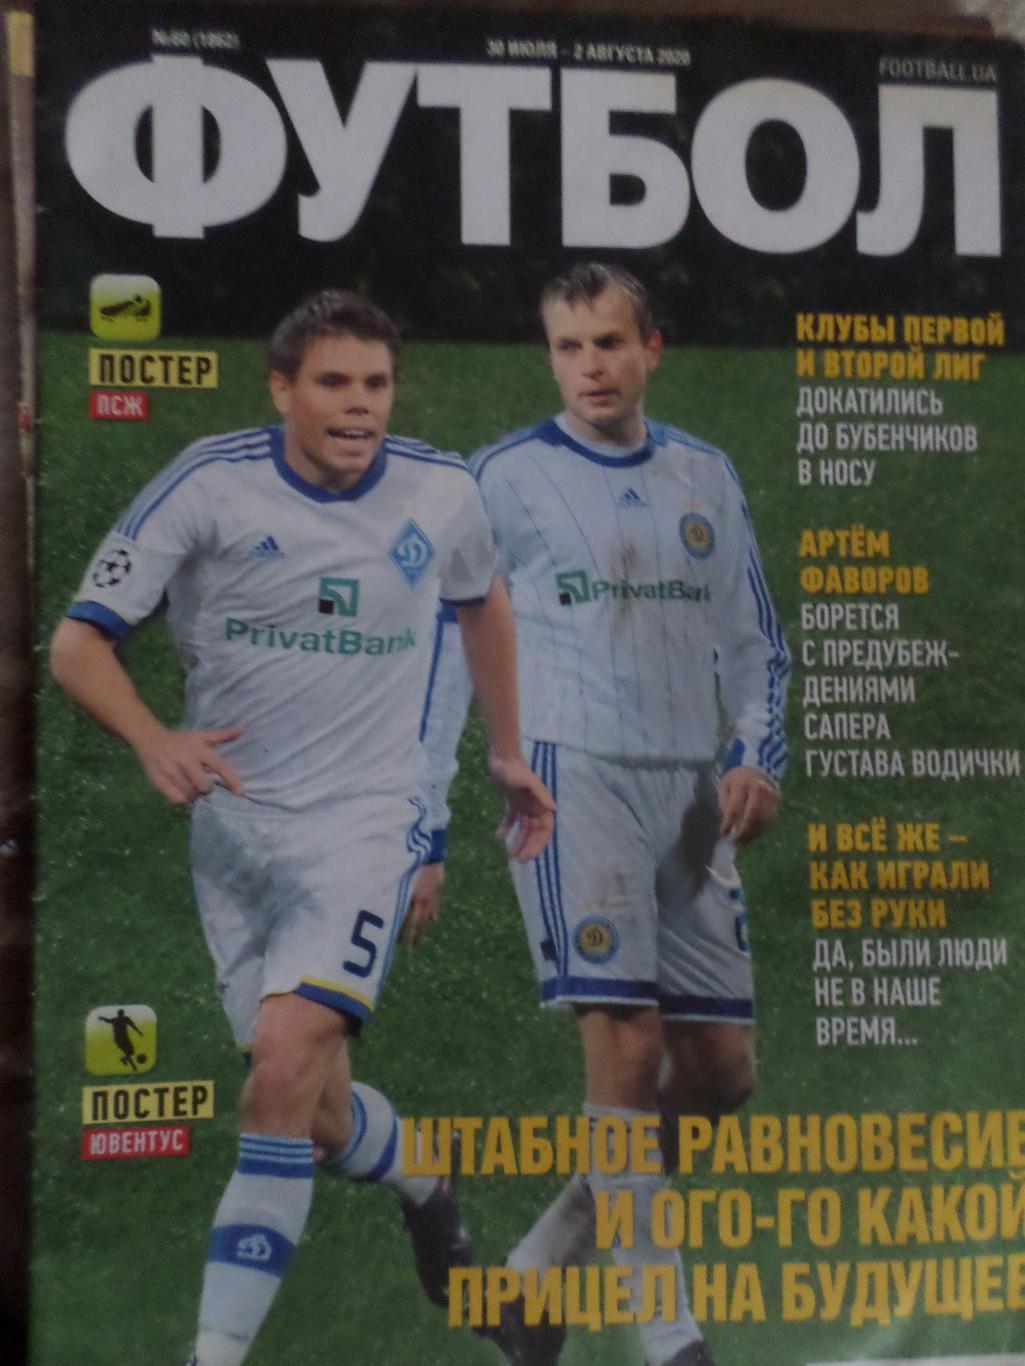 Еженедельник Футбол, Киев, № 60 2020 год